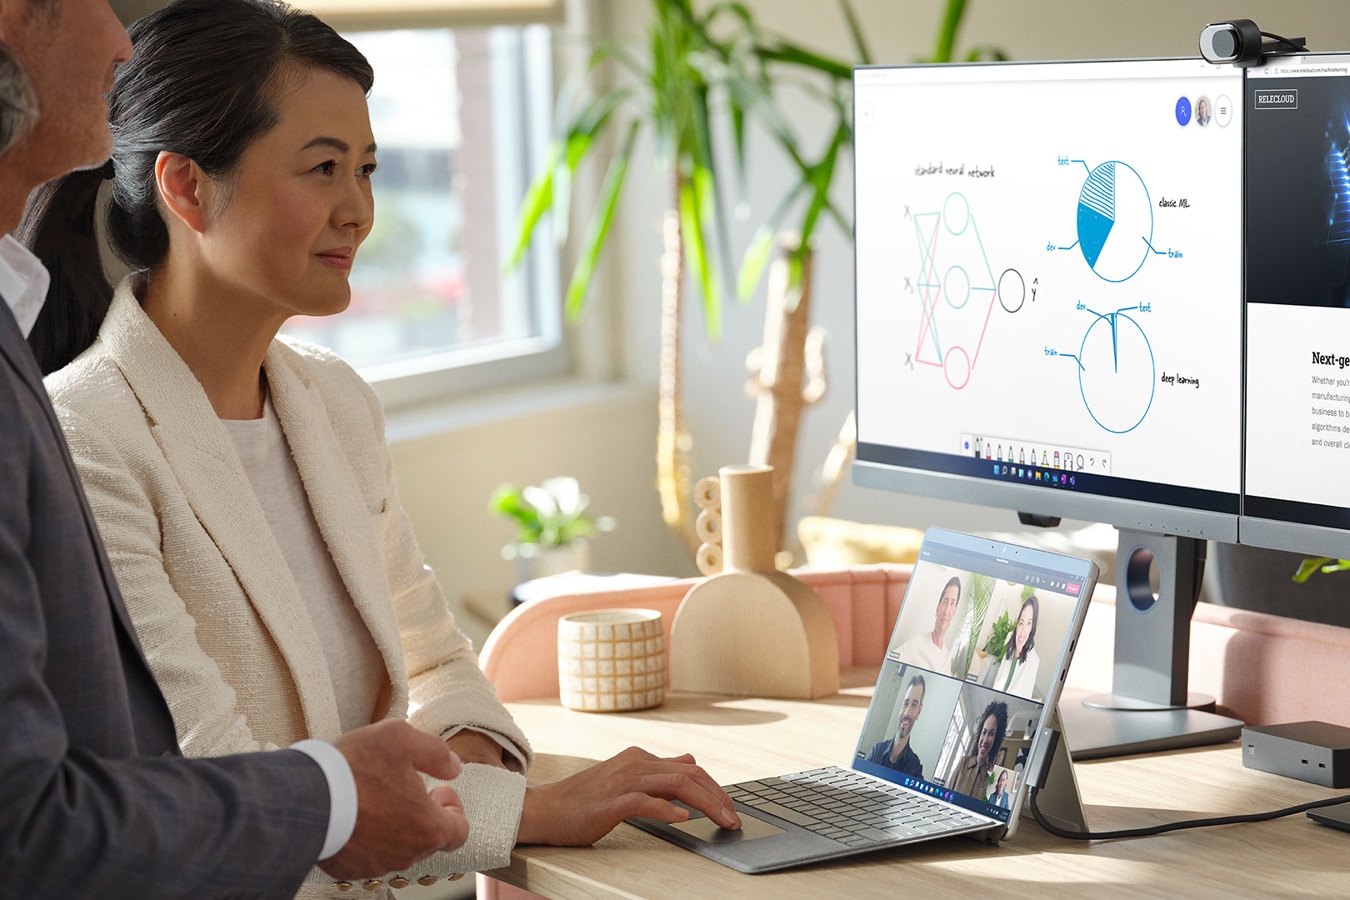 Un bărbat și o femeie într-un birou folosesc dispozitivul Surface, conectat la două monitoare externe, pentru a conduce o ședință Microsoft Teams